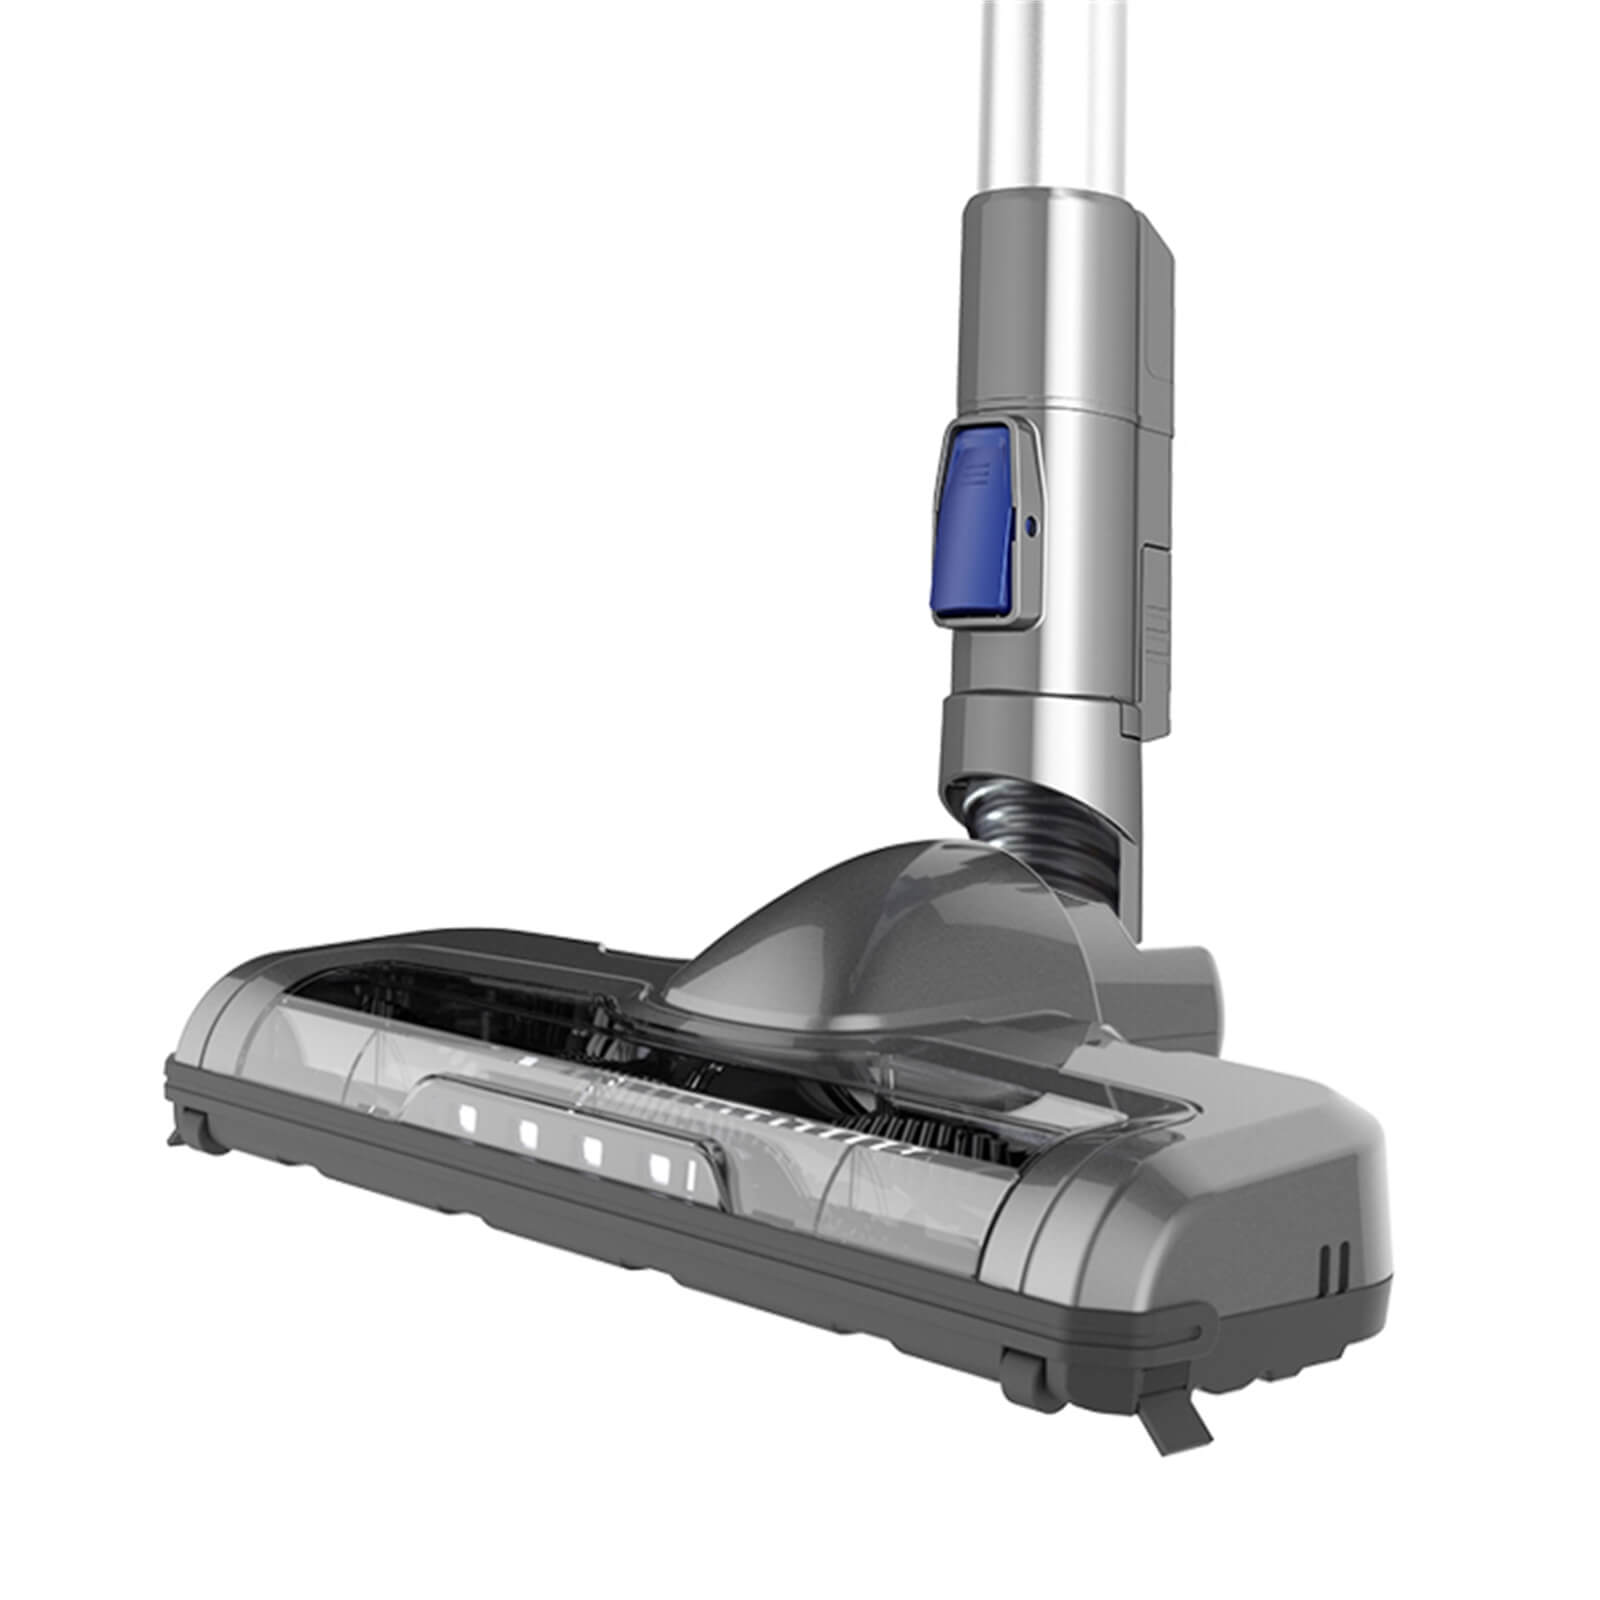 PowerTurbo Cordless 3-in-1 Vacuum